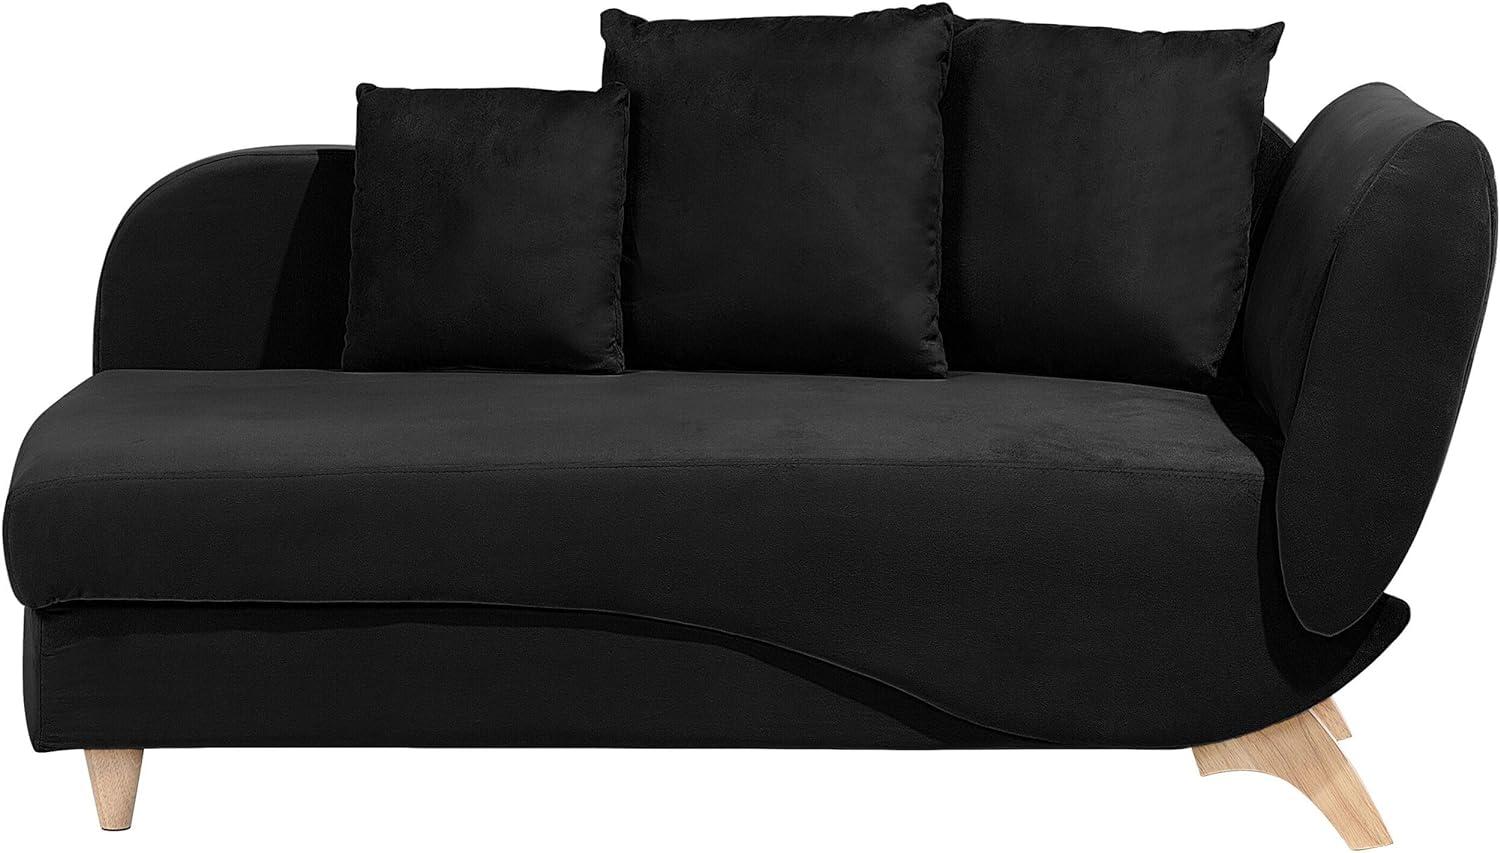 Chaiselongue Samtstoff schwarz mit Bettkasten rechtsseitig MERI Bild 1